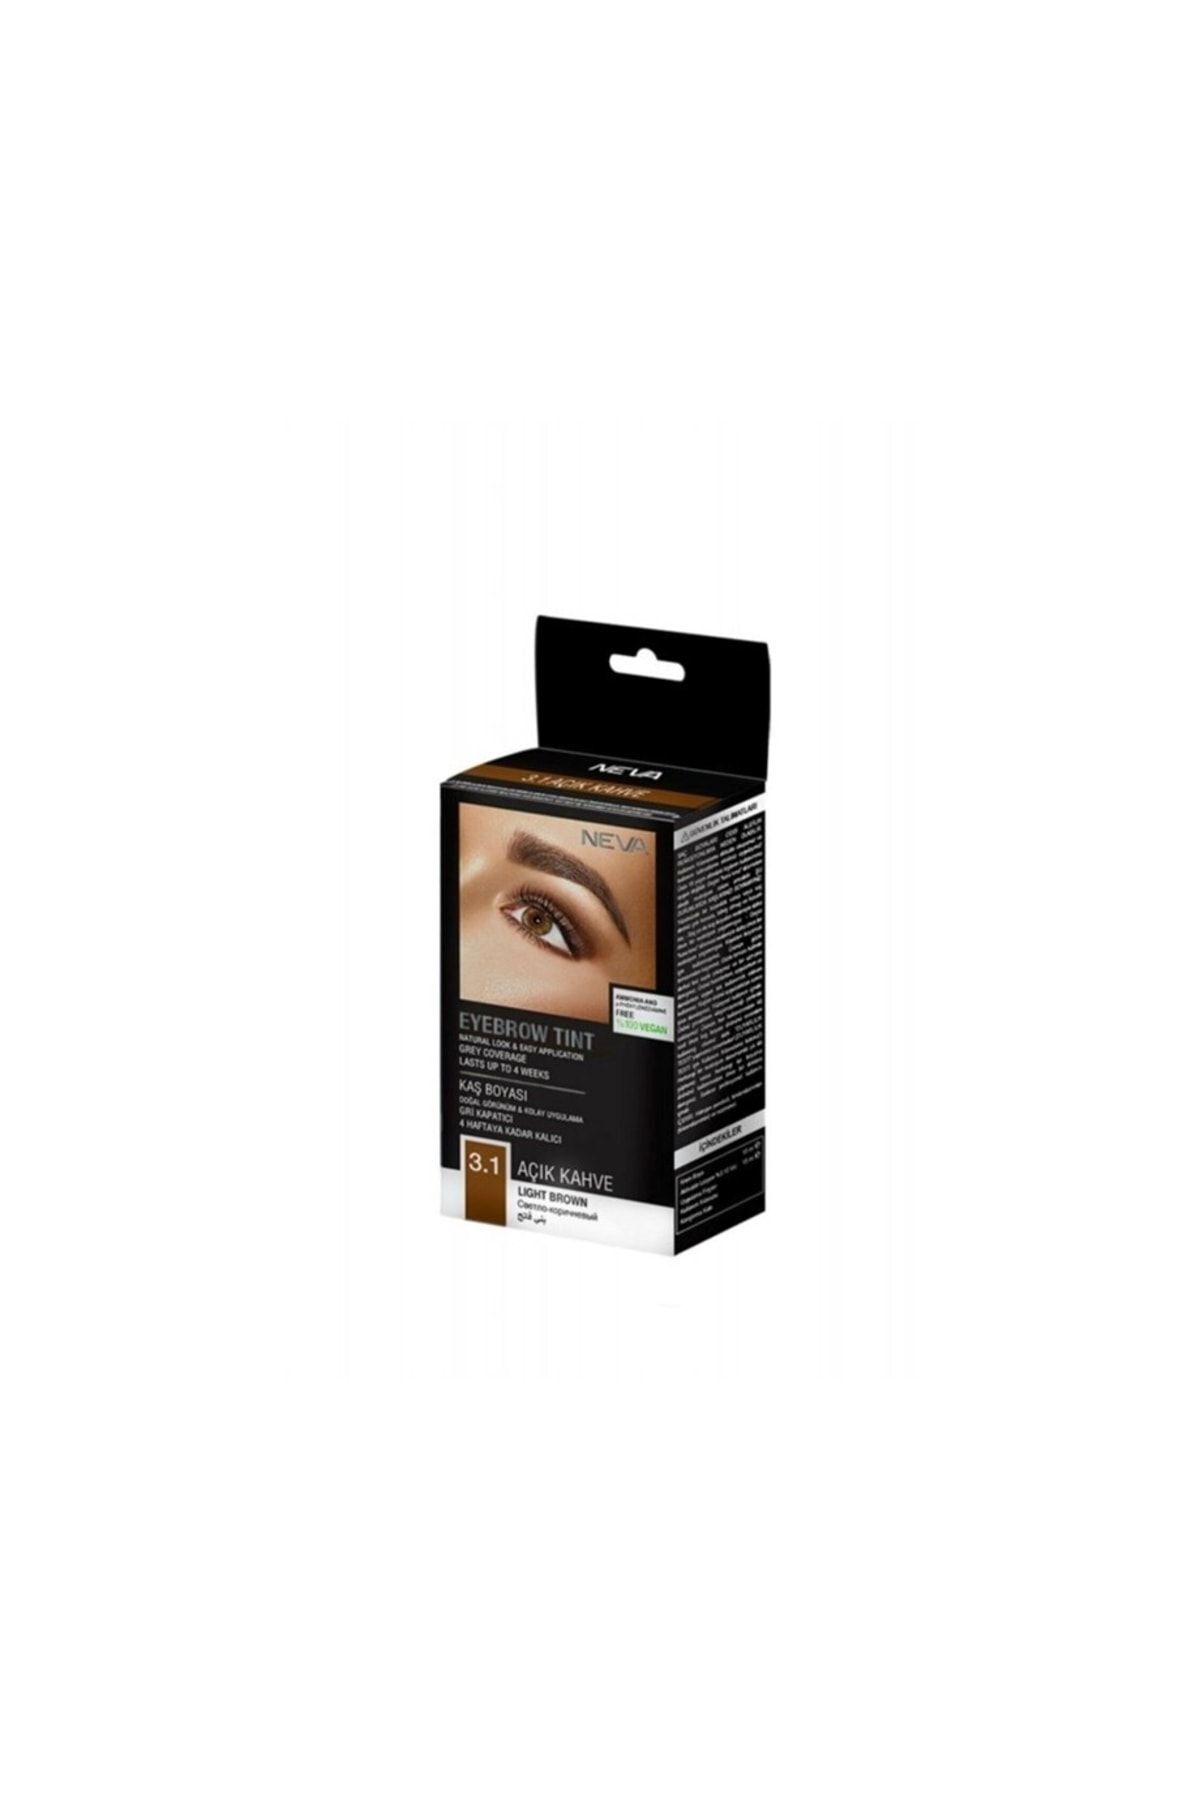 Neva Eyebrow Tint Vegan Kaş Boyası Seti 3.1 Açık Kahve